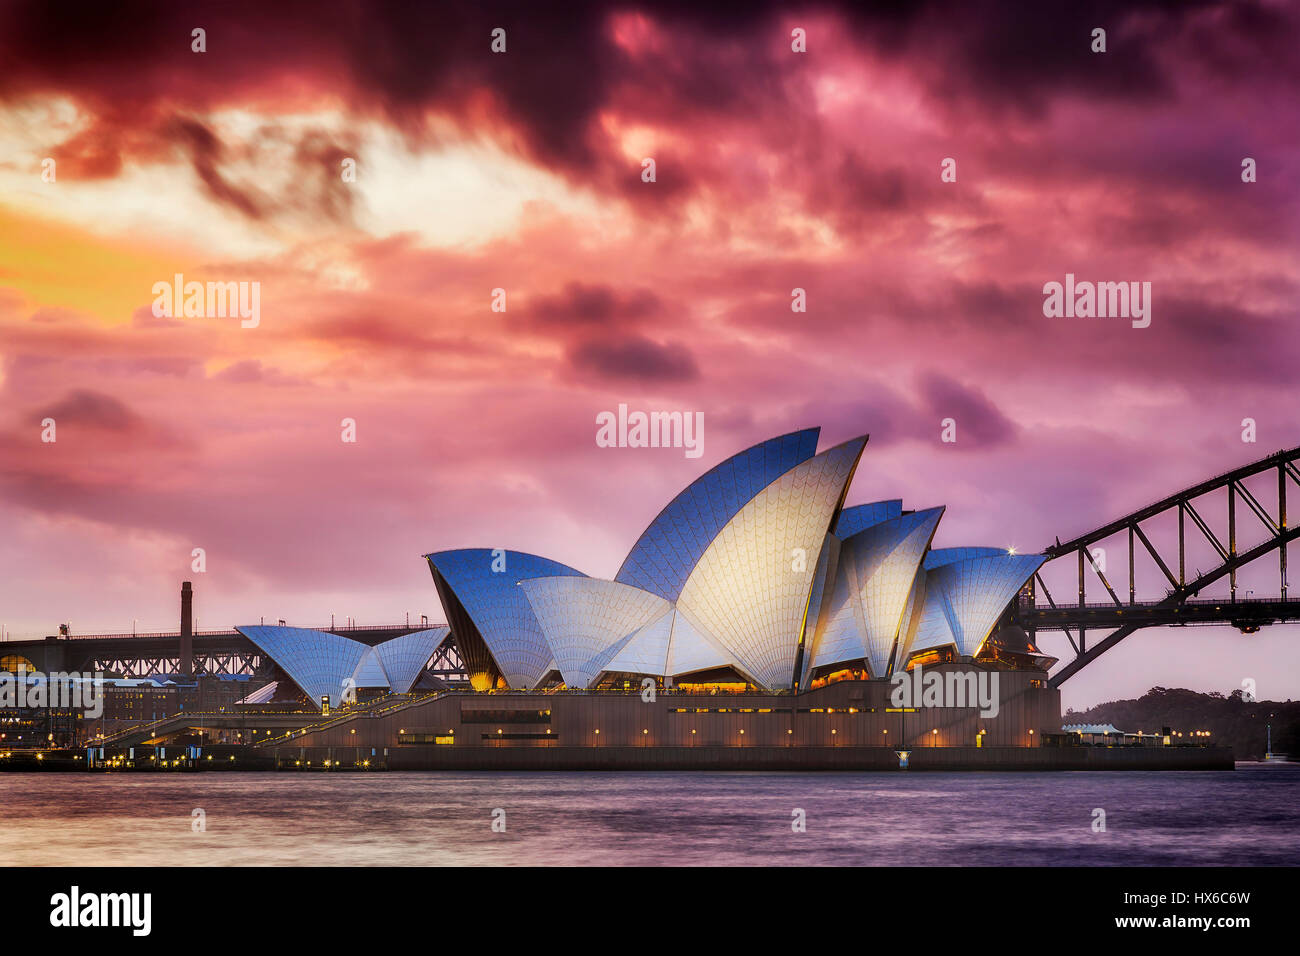 Sydney, Australie - 19 mars 2017 : soleil magique plus célèbres - Opéra de Sydney et le Harbour Bridge. Vue latérale d'allumé l'opéra. Banque D'Images